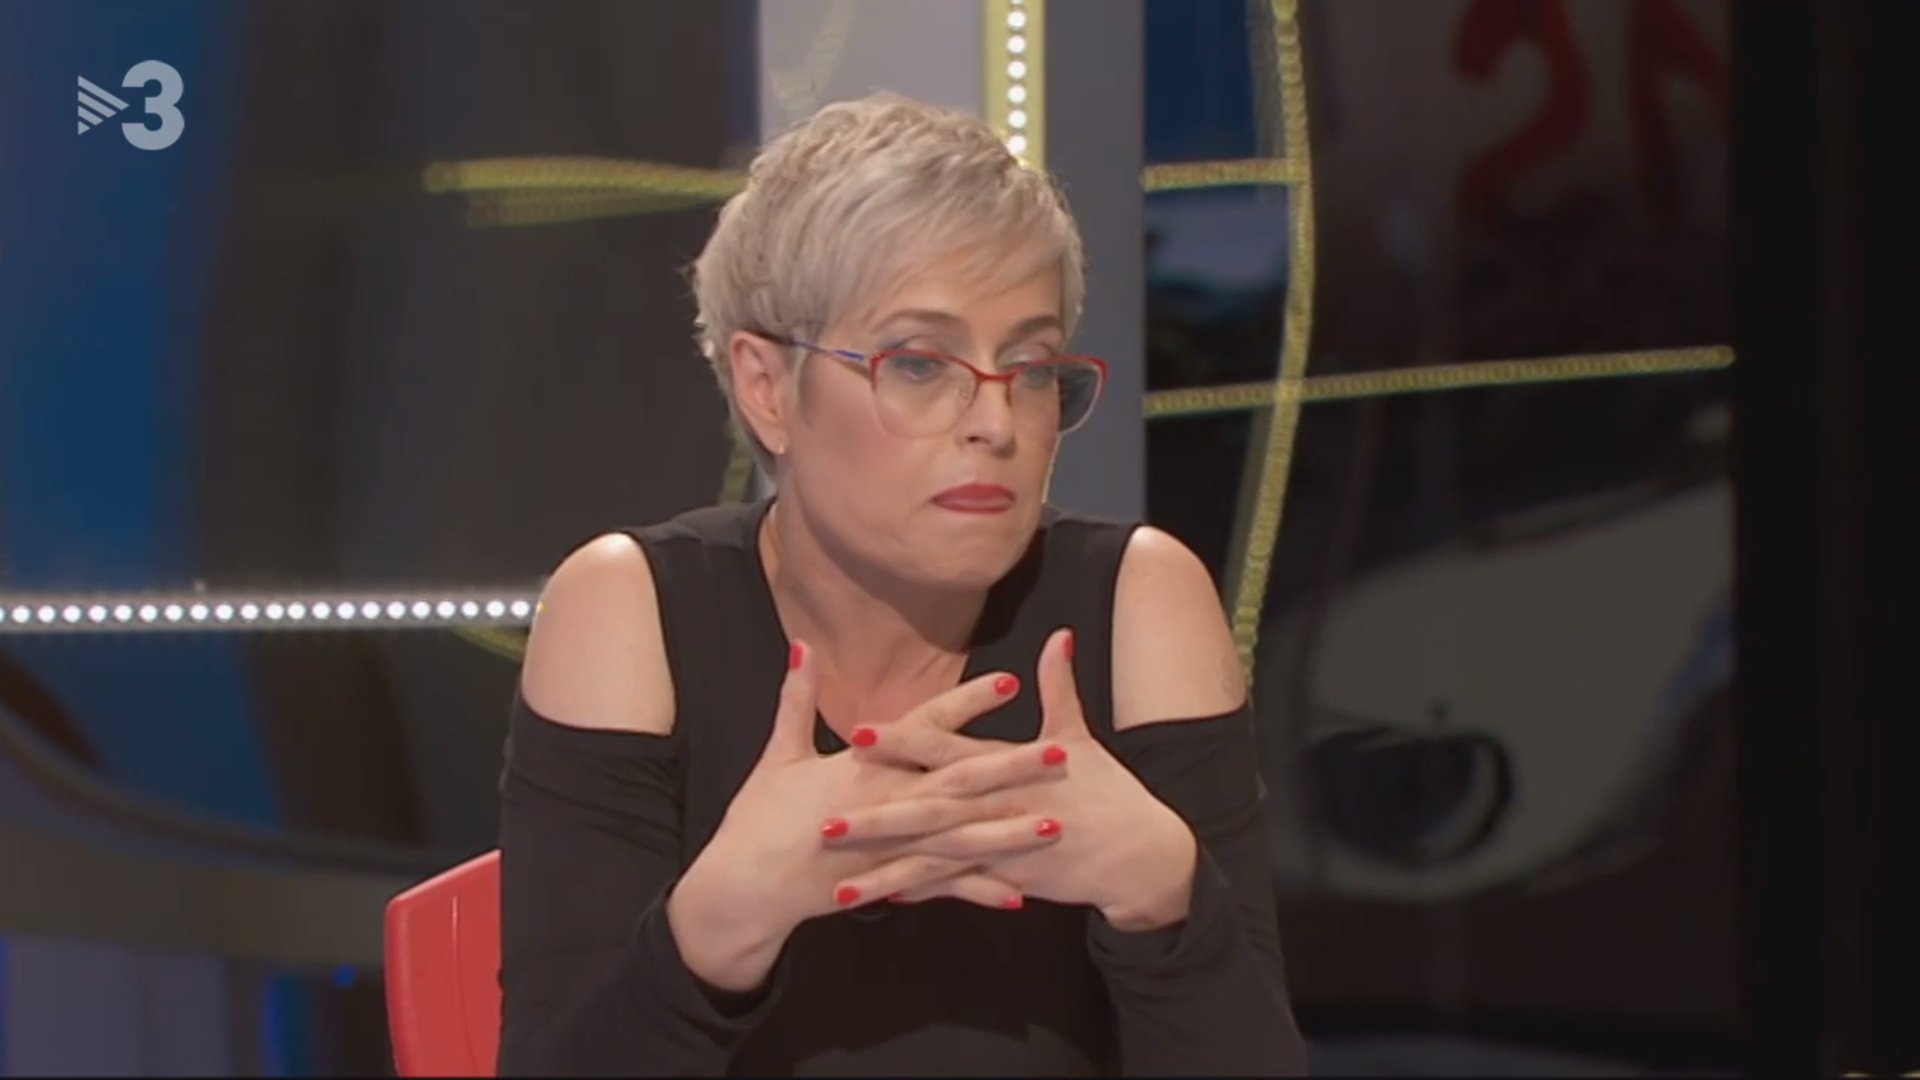 FAQS convida Anna Grau i la xarxa explota: allau de crítiques